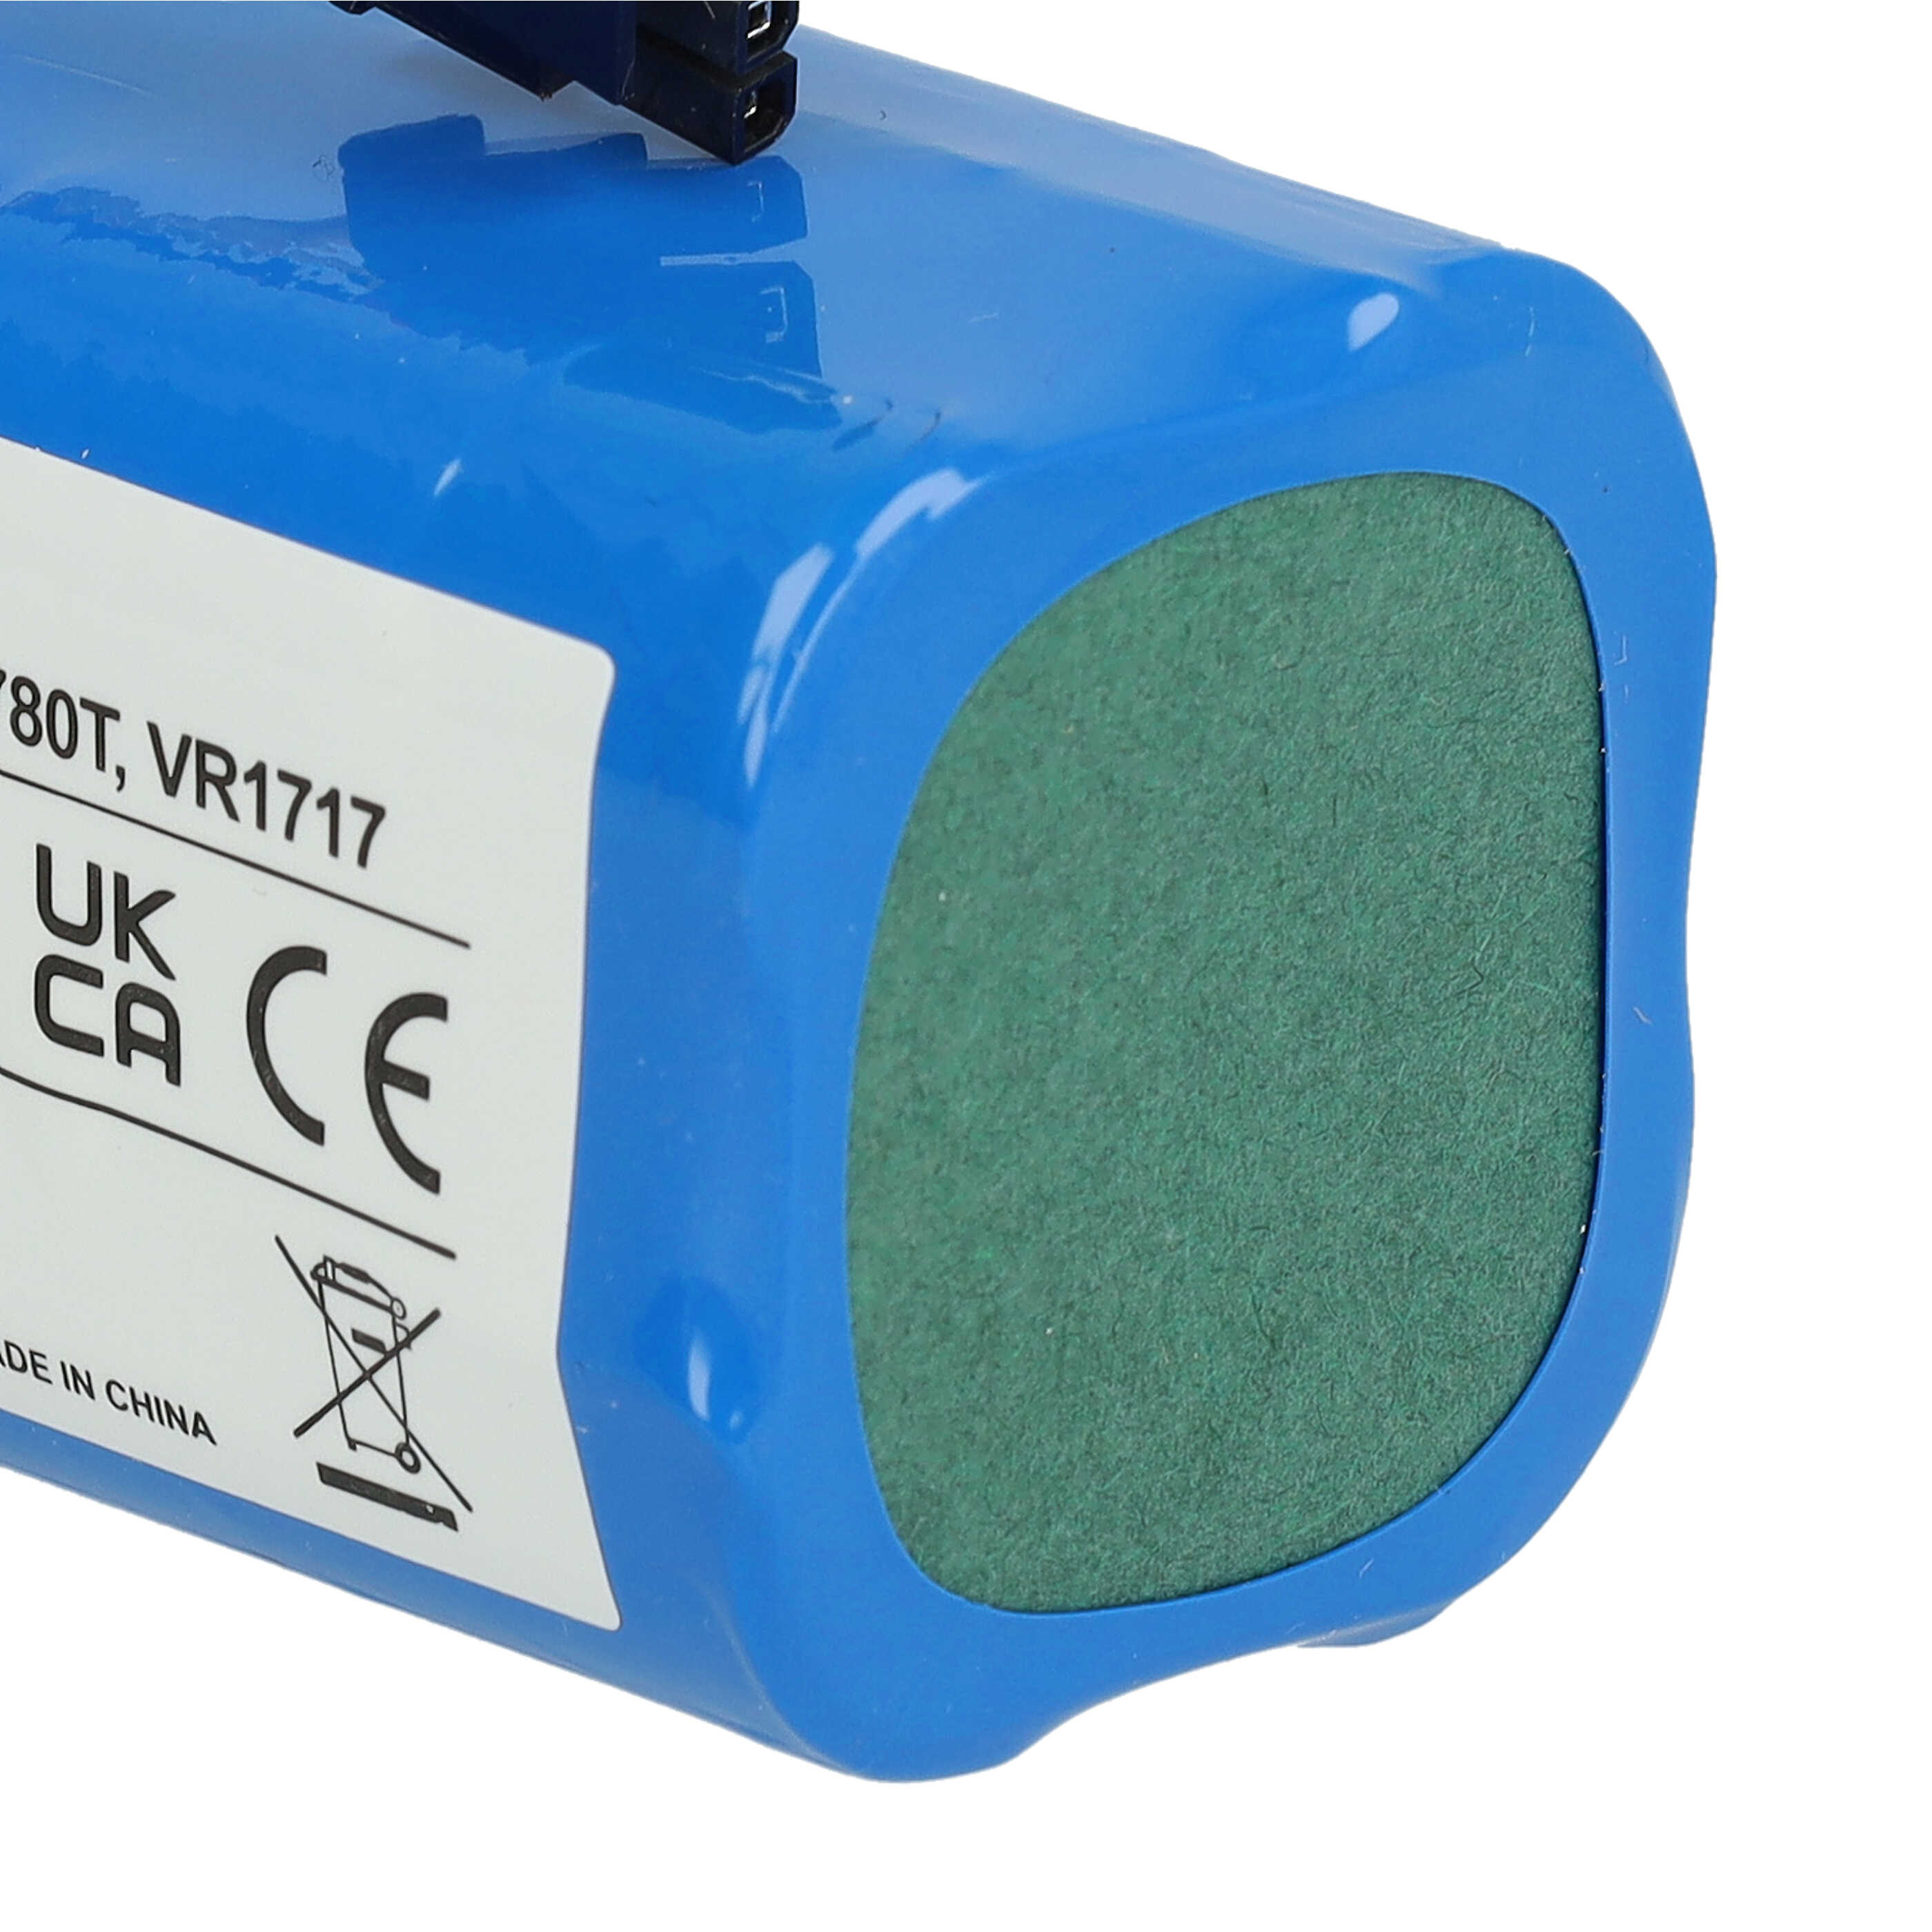 Batterie remplace Proscenic VR1717 pour robot aspirateur - 3000mAh 14,8V Li-ion